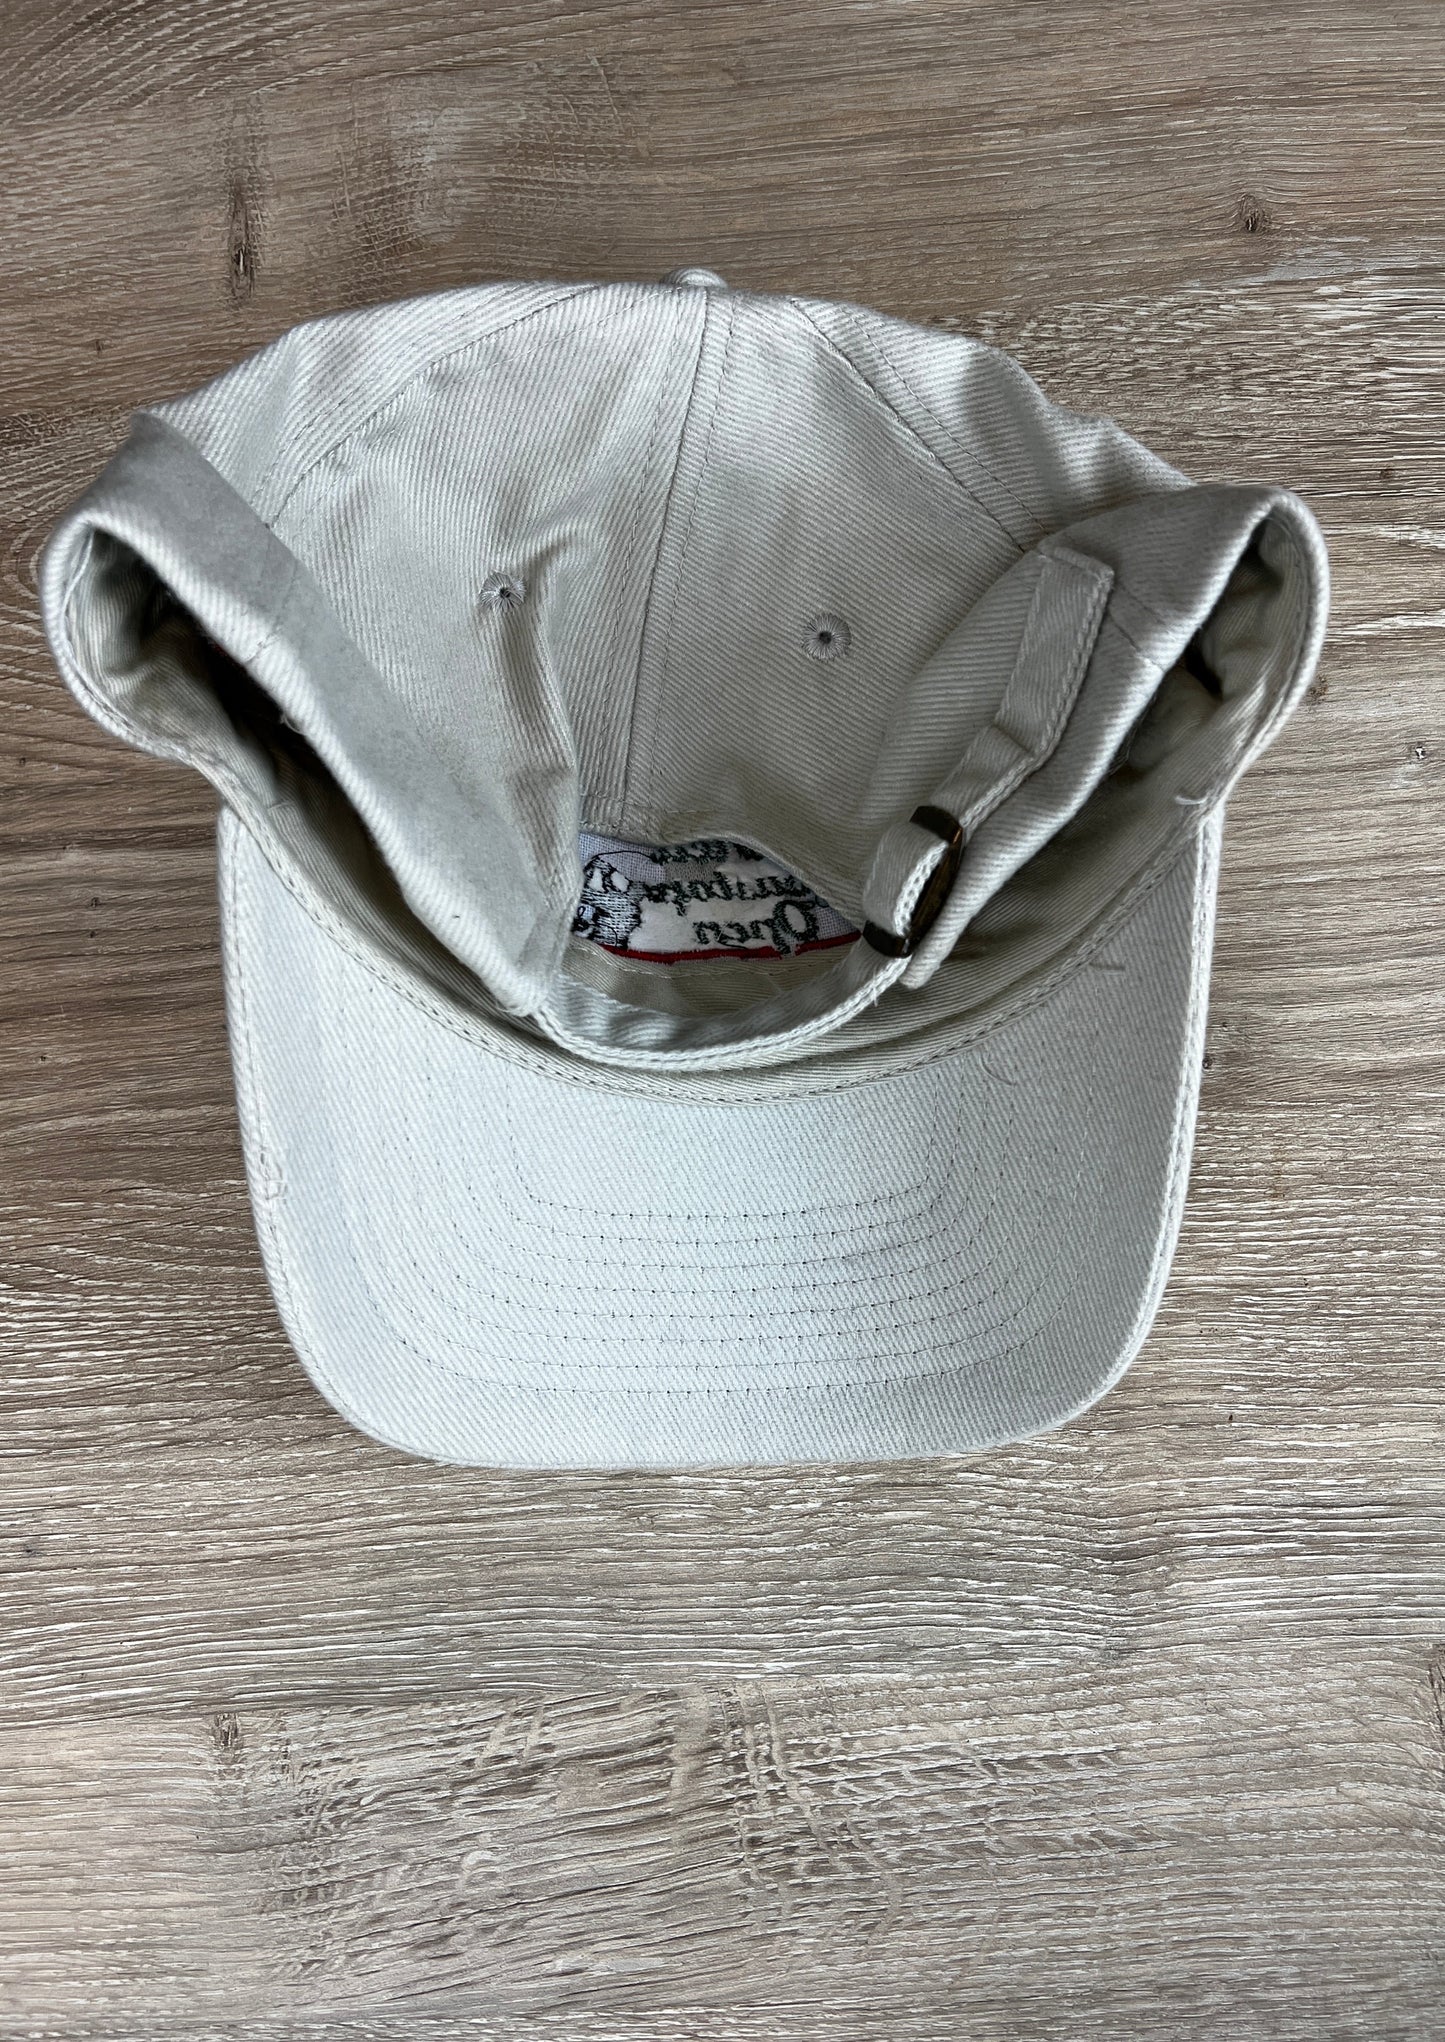 Shell Houston Open Hat By Head Shots